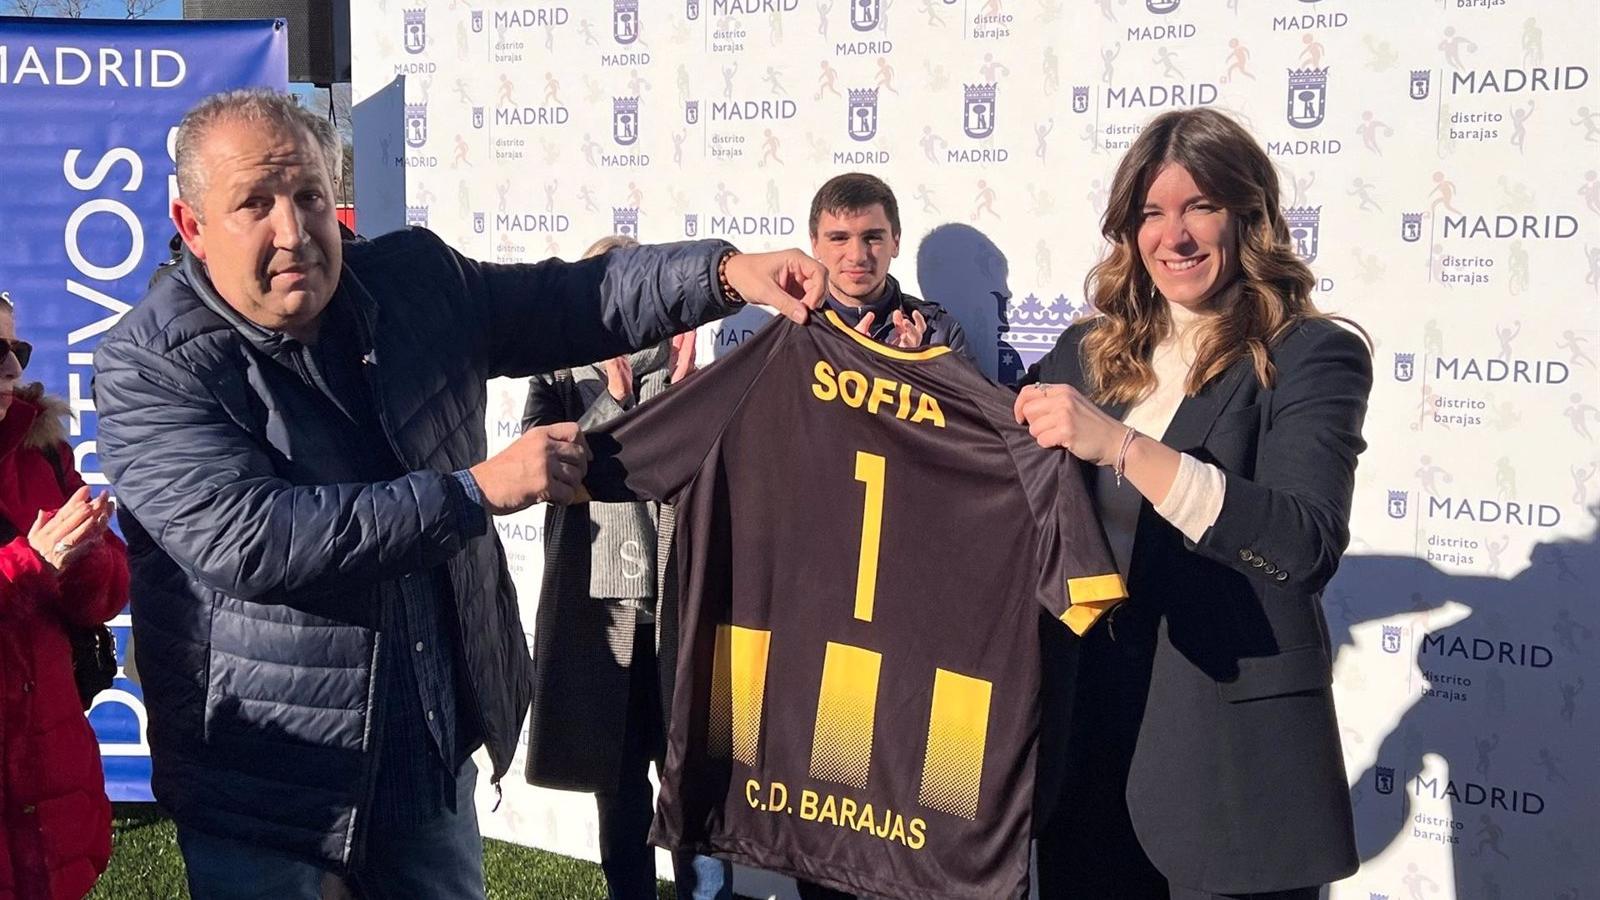 Miranda inaugura el nuevo césped artificial del campo de fútbol del CD Barajas con el Torneo de Reyes